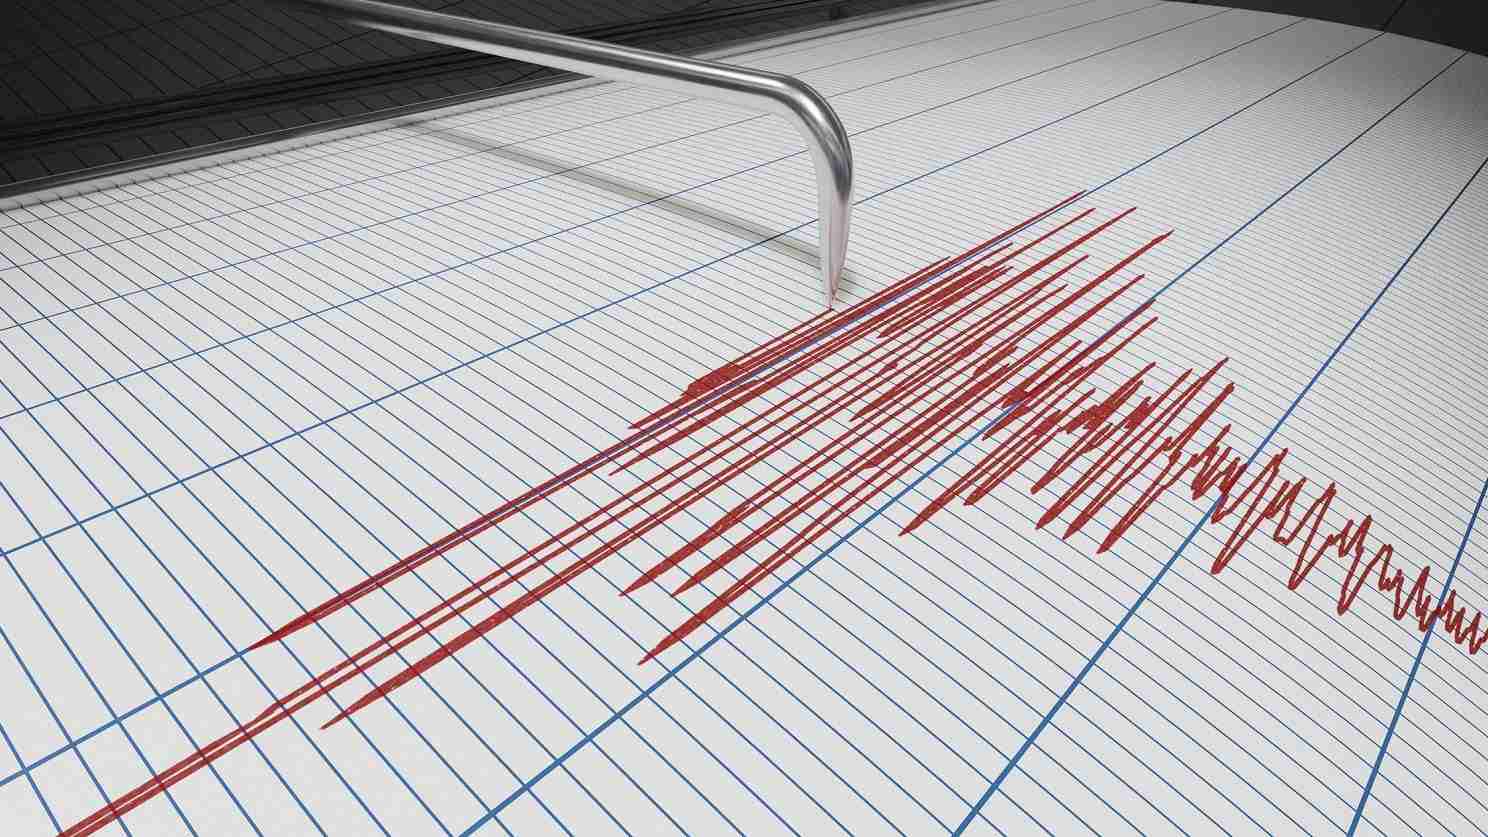 Scossa di terremoto alle 4:21 in provincia di Catania